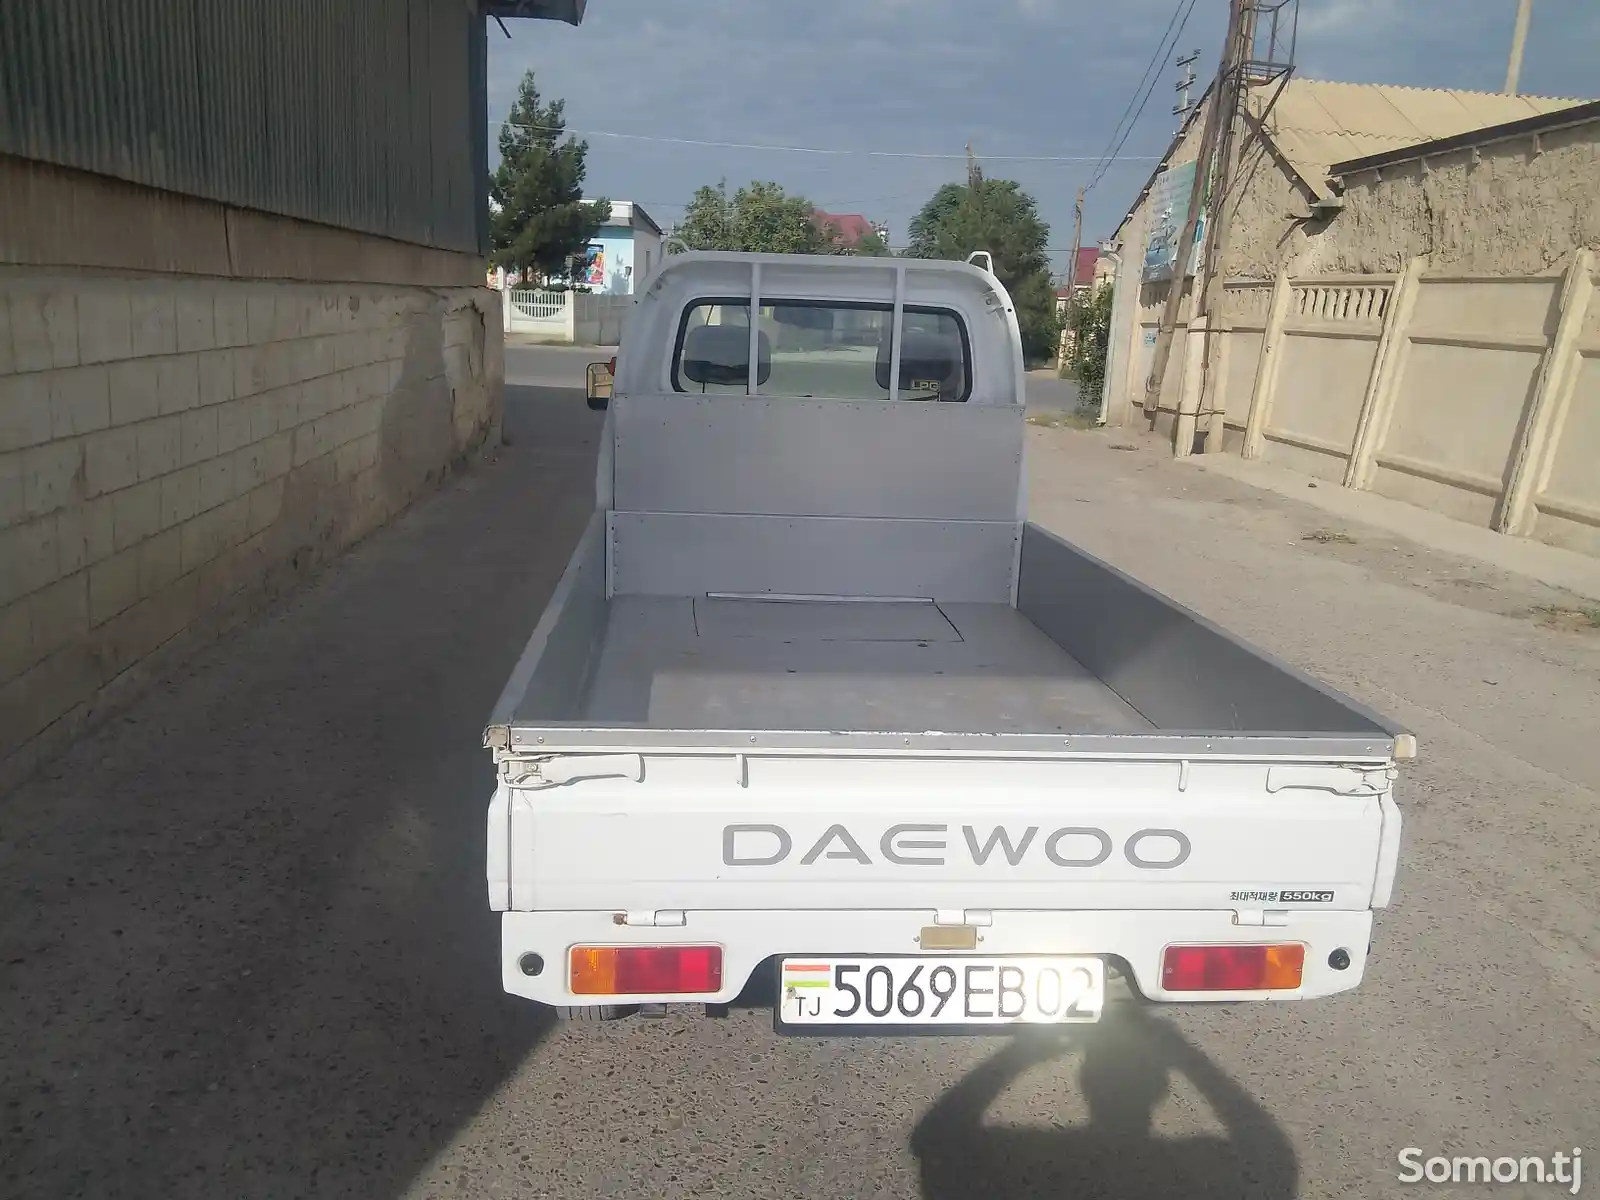 Бортовой автомобиль Daewoo Labo, 1996-2